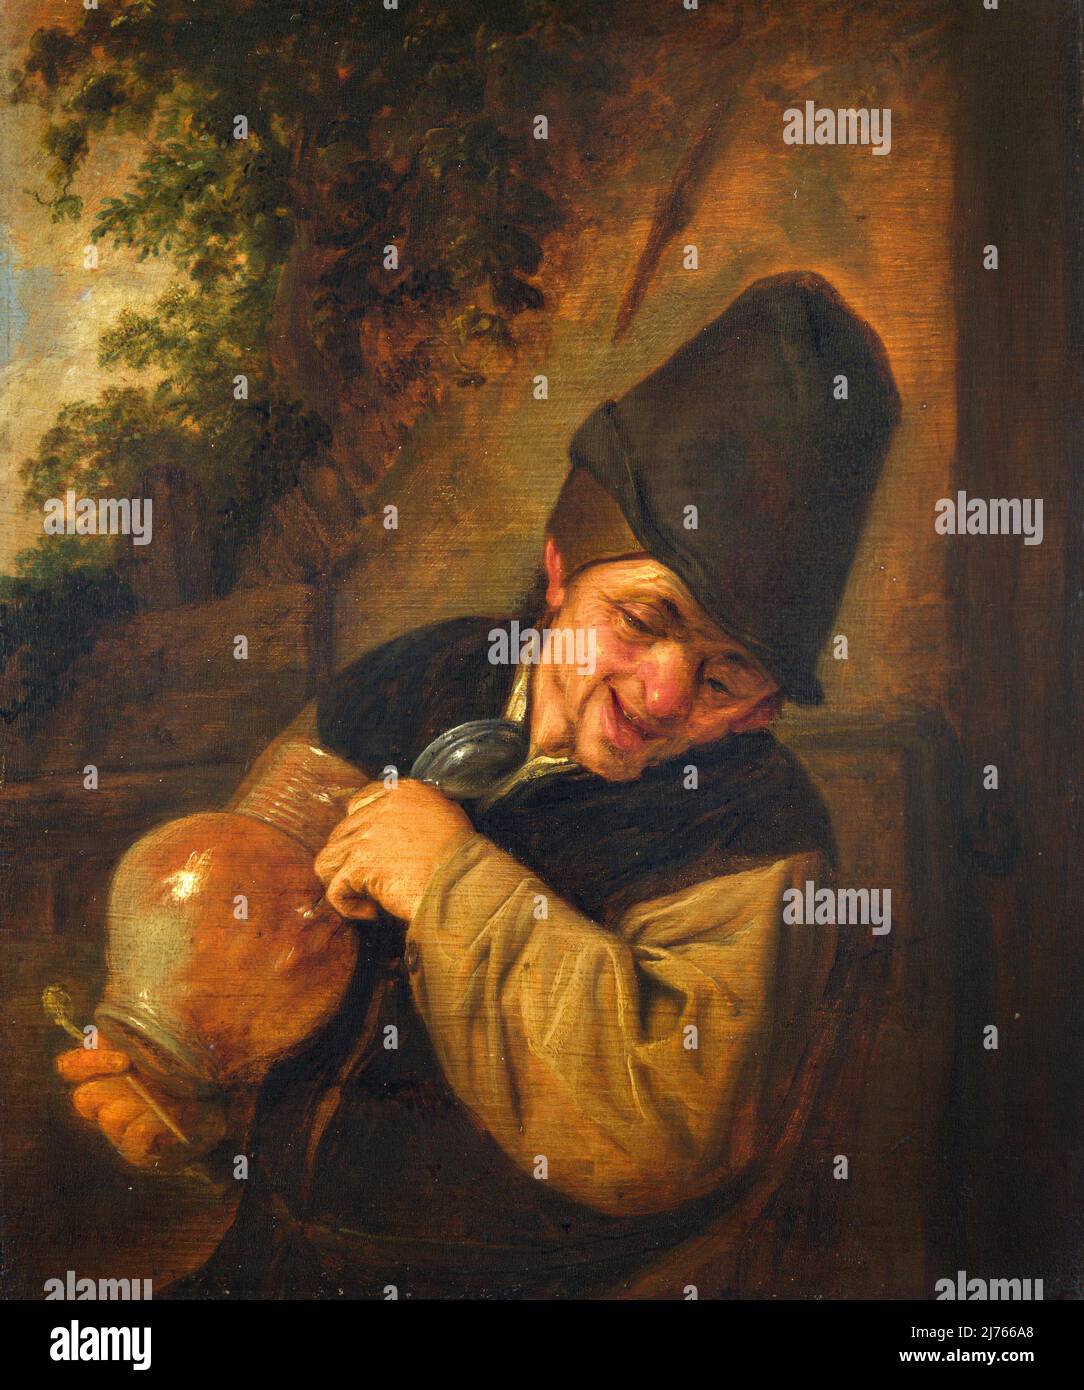 Ein Bauer mit Krug und Pfeife vom niederländischen Maler des Goldenen Zeitalters, Adriaen van Ostade (1610-1685), Öl auf Eiche, c. 1650-55 Stockfoto